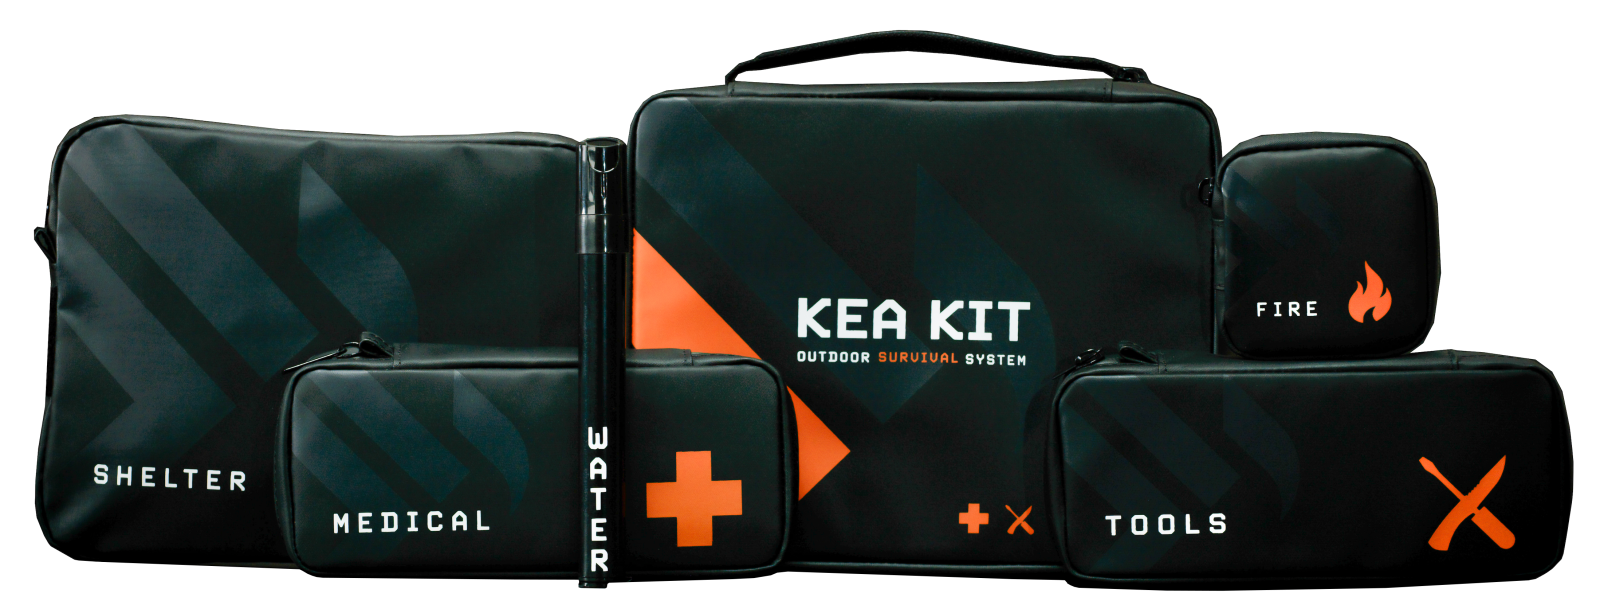 Kea Survival Kit in Black and Orange